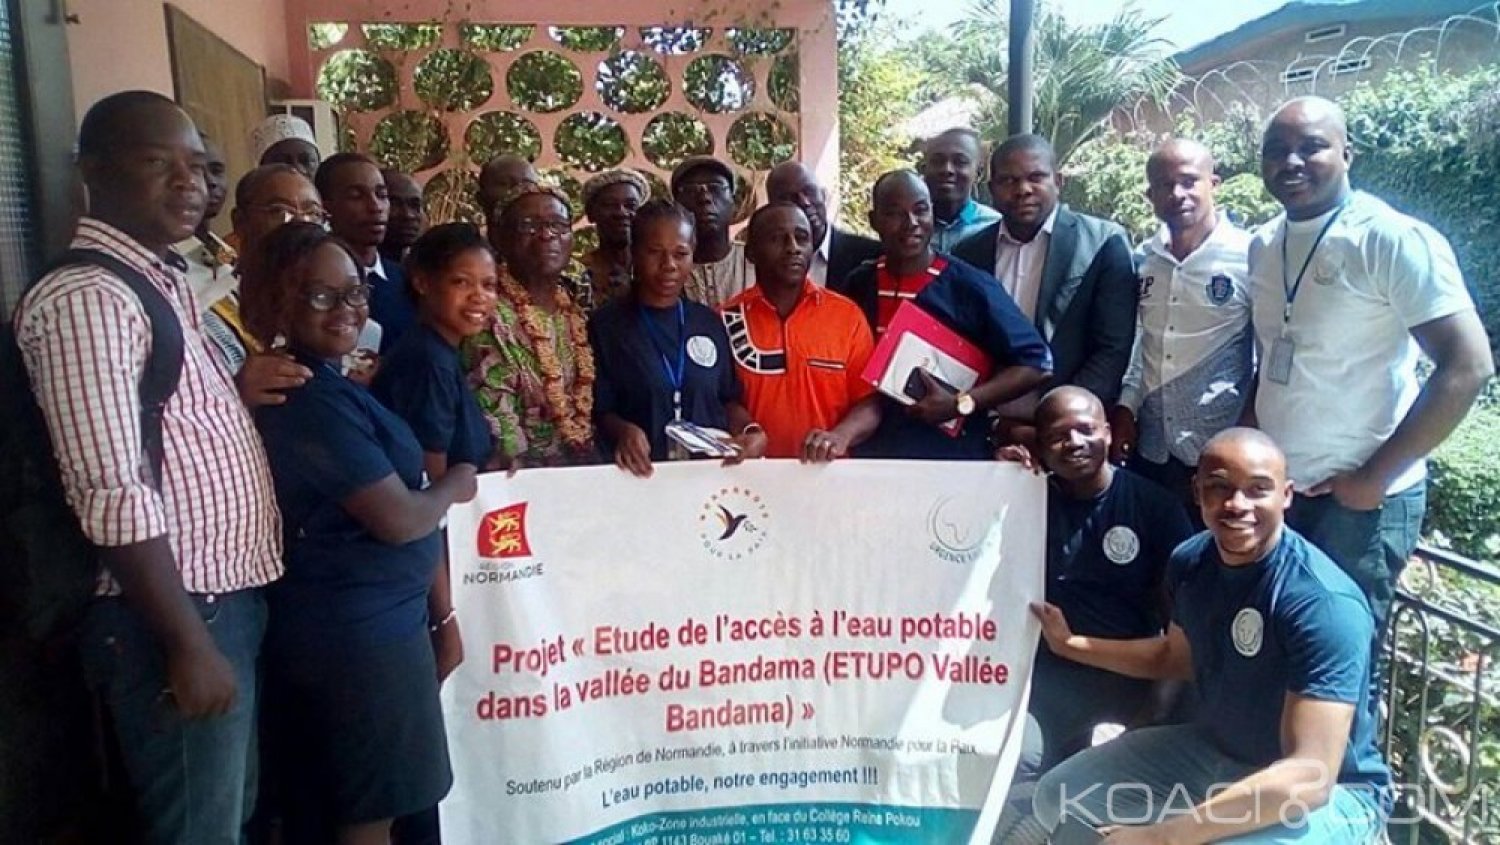 Côte d'Ivoire : Bouaké, présent à  un projet d'accès à  l'eau potable,     le DR de la SODECI invite une ONG à  la sensibisation